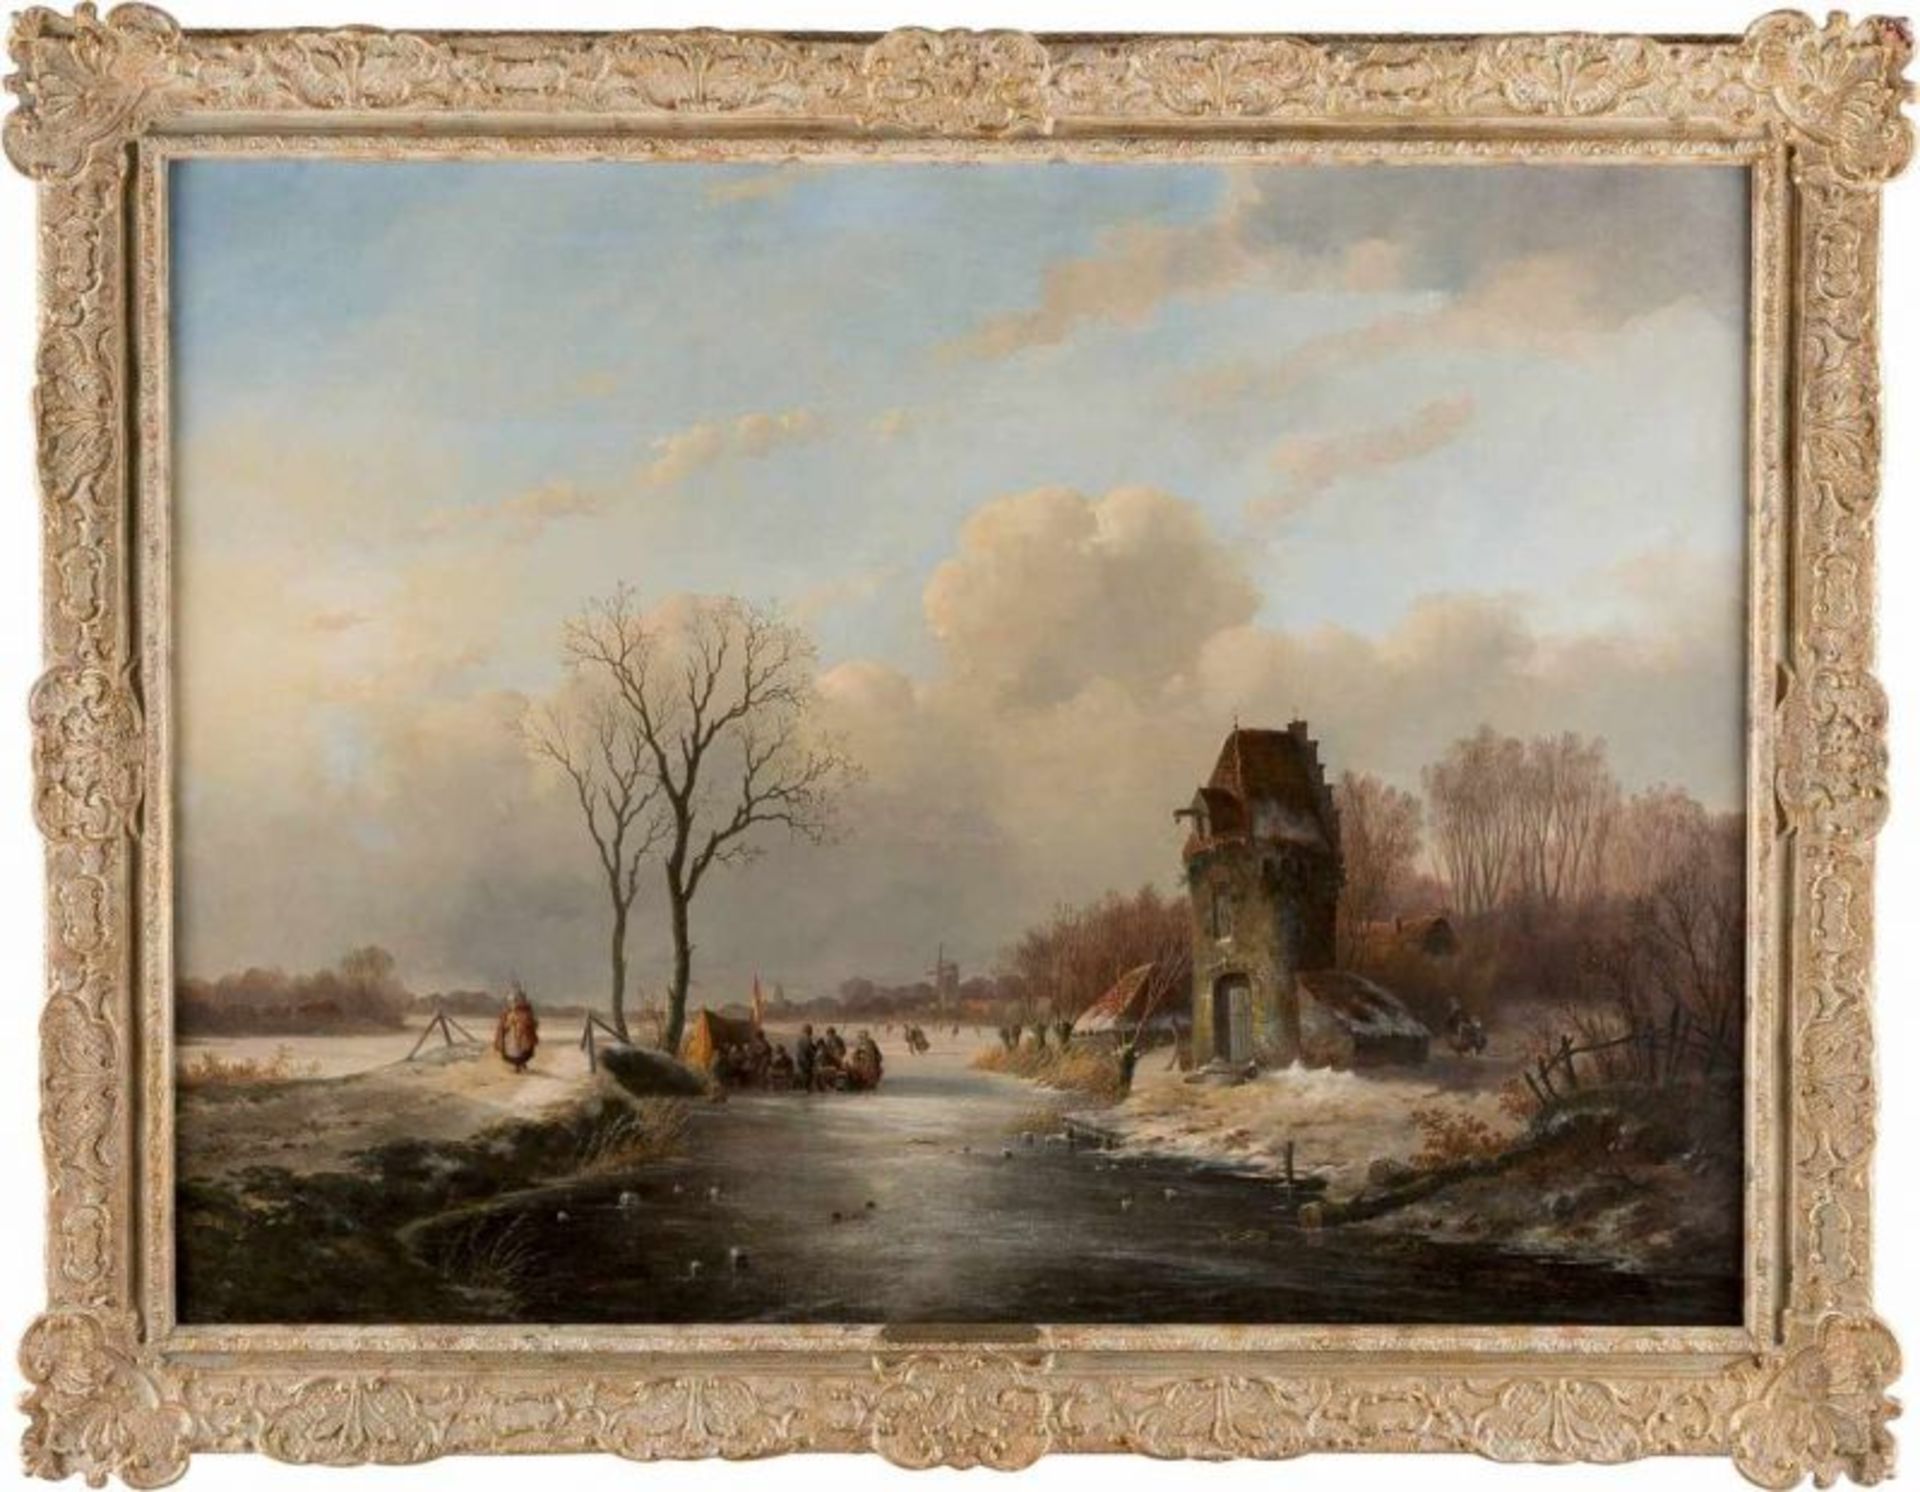 JAN JACOB SPOHLER 1811 Nederhorst den Berg - 1866 Amsterdam WINTERLANDSCHAFT MIT REGEM TREIBEN AUF - Bild 2 aus 3